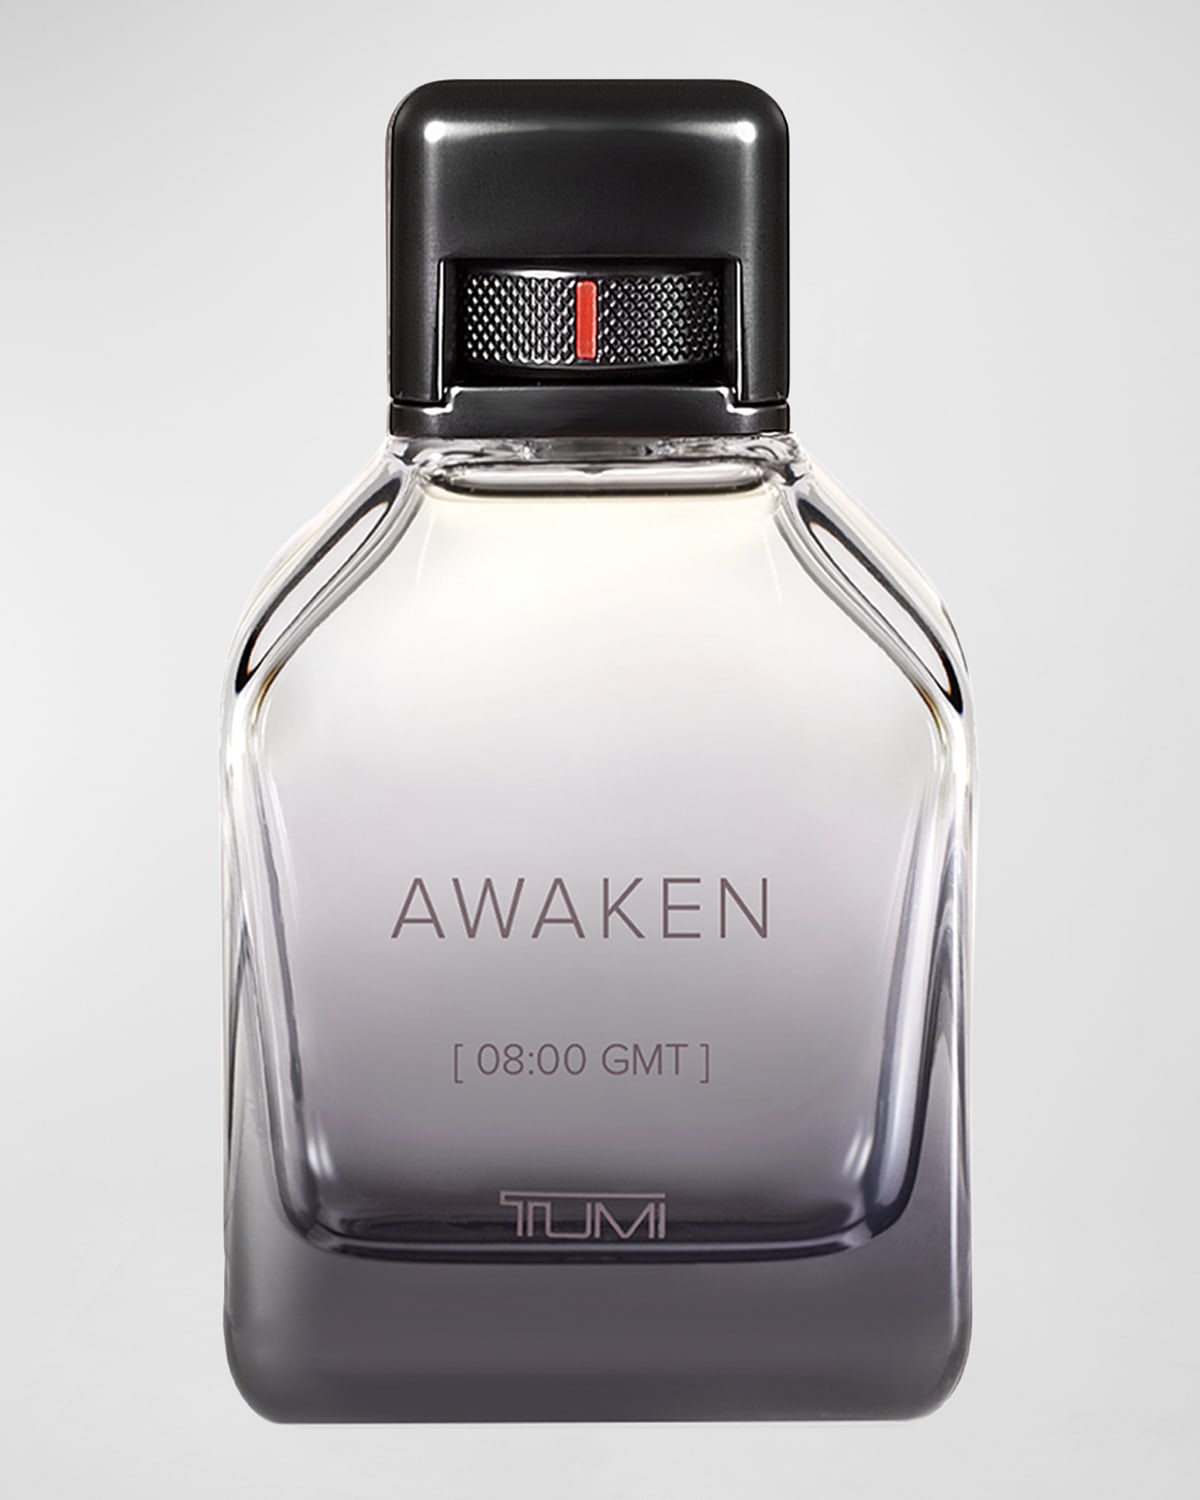 Shop Tumi Awaken [08:00 Gmt]  For Men Eau De Parfum Spray, 6.7 Oz.